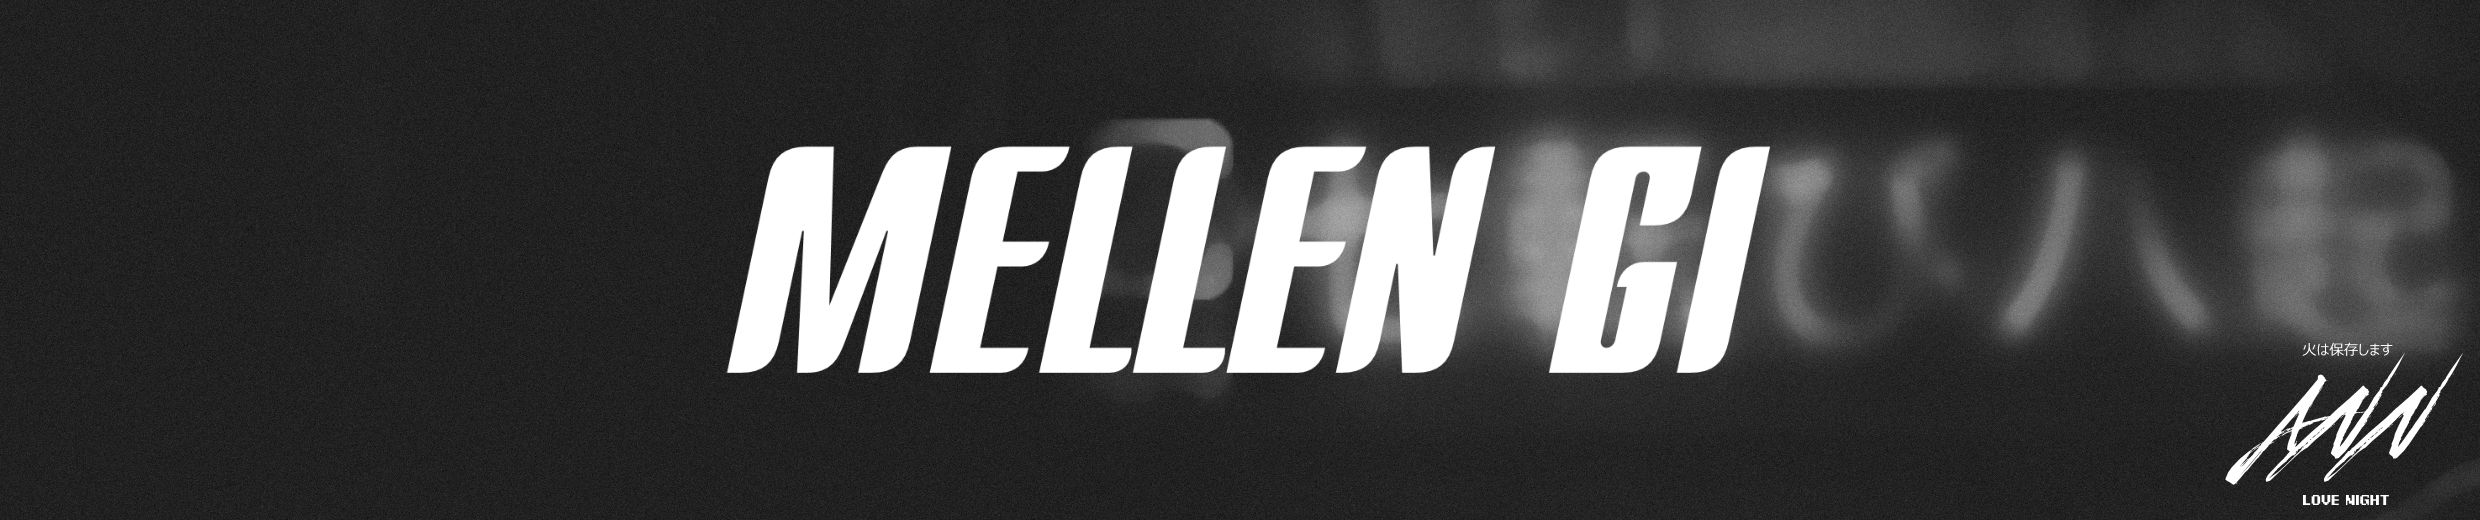 Stream Zivert - Life (Mellen Gi Remix) by Mellen Gi | Listen online for  free on SoundCloud